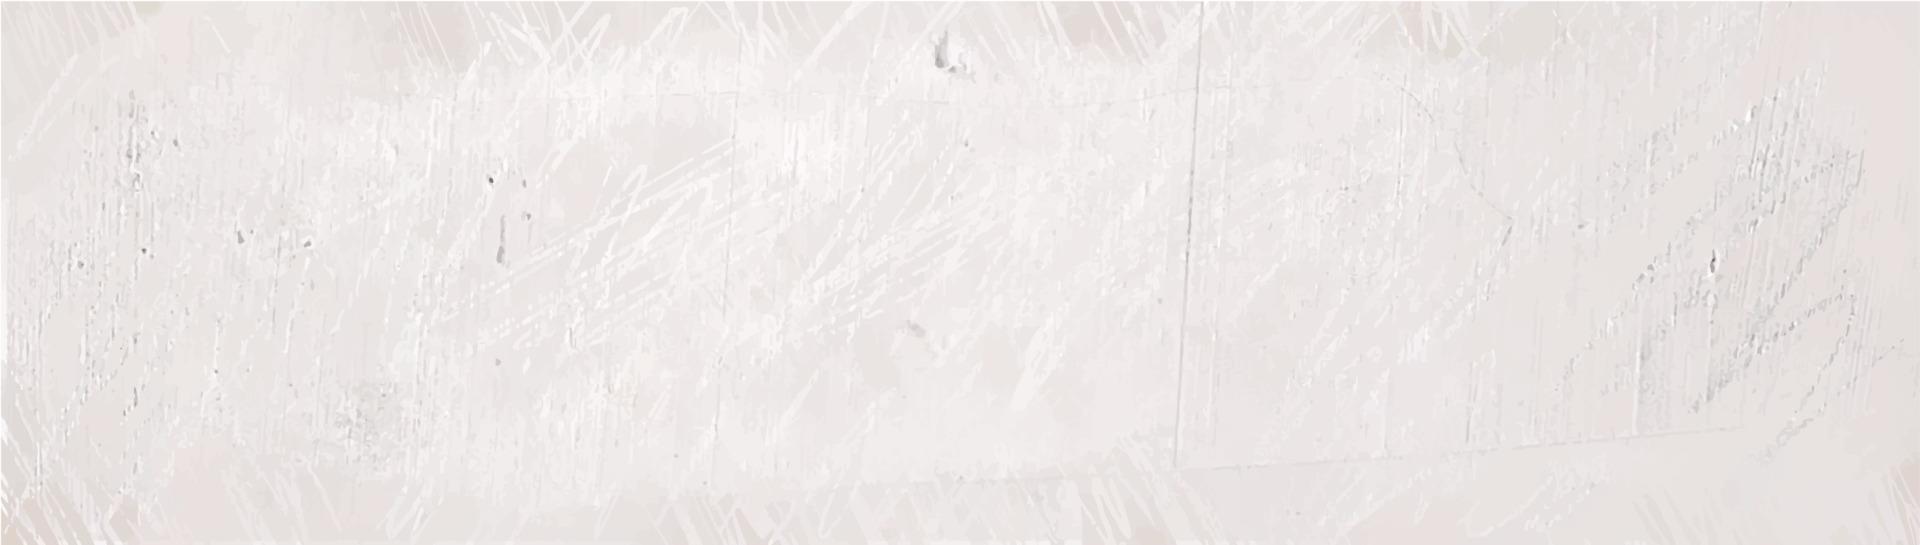 sfondo astratto bianco grunge texture vettore